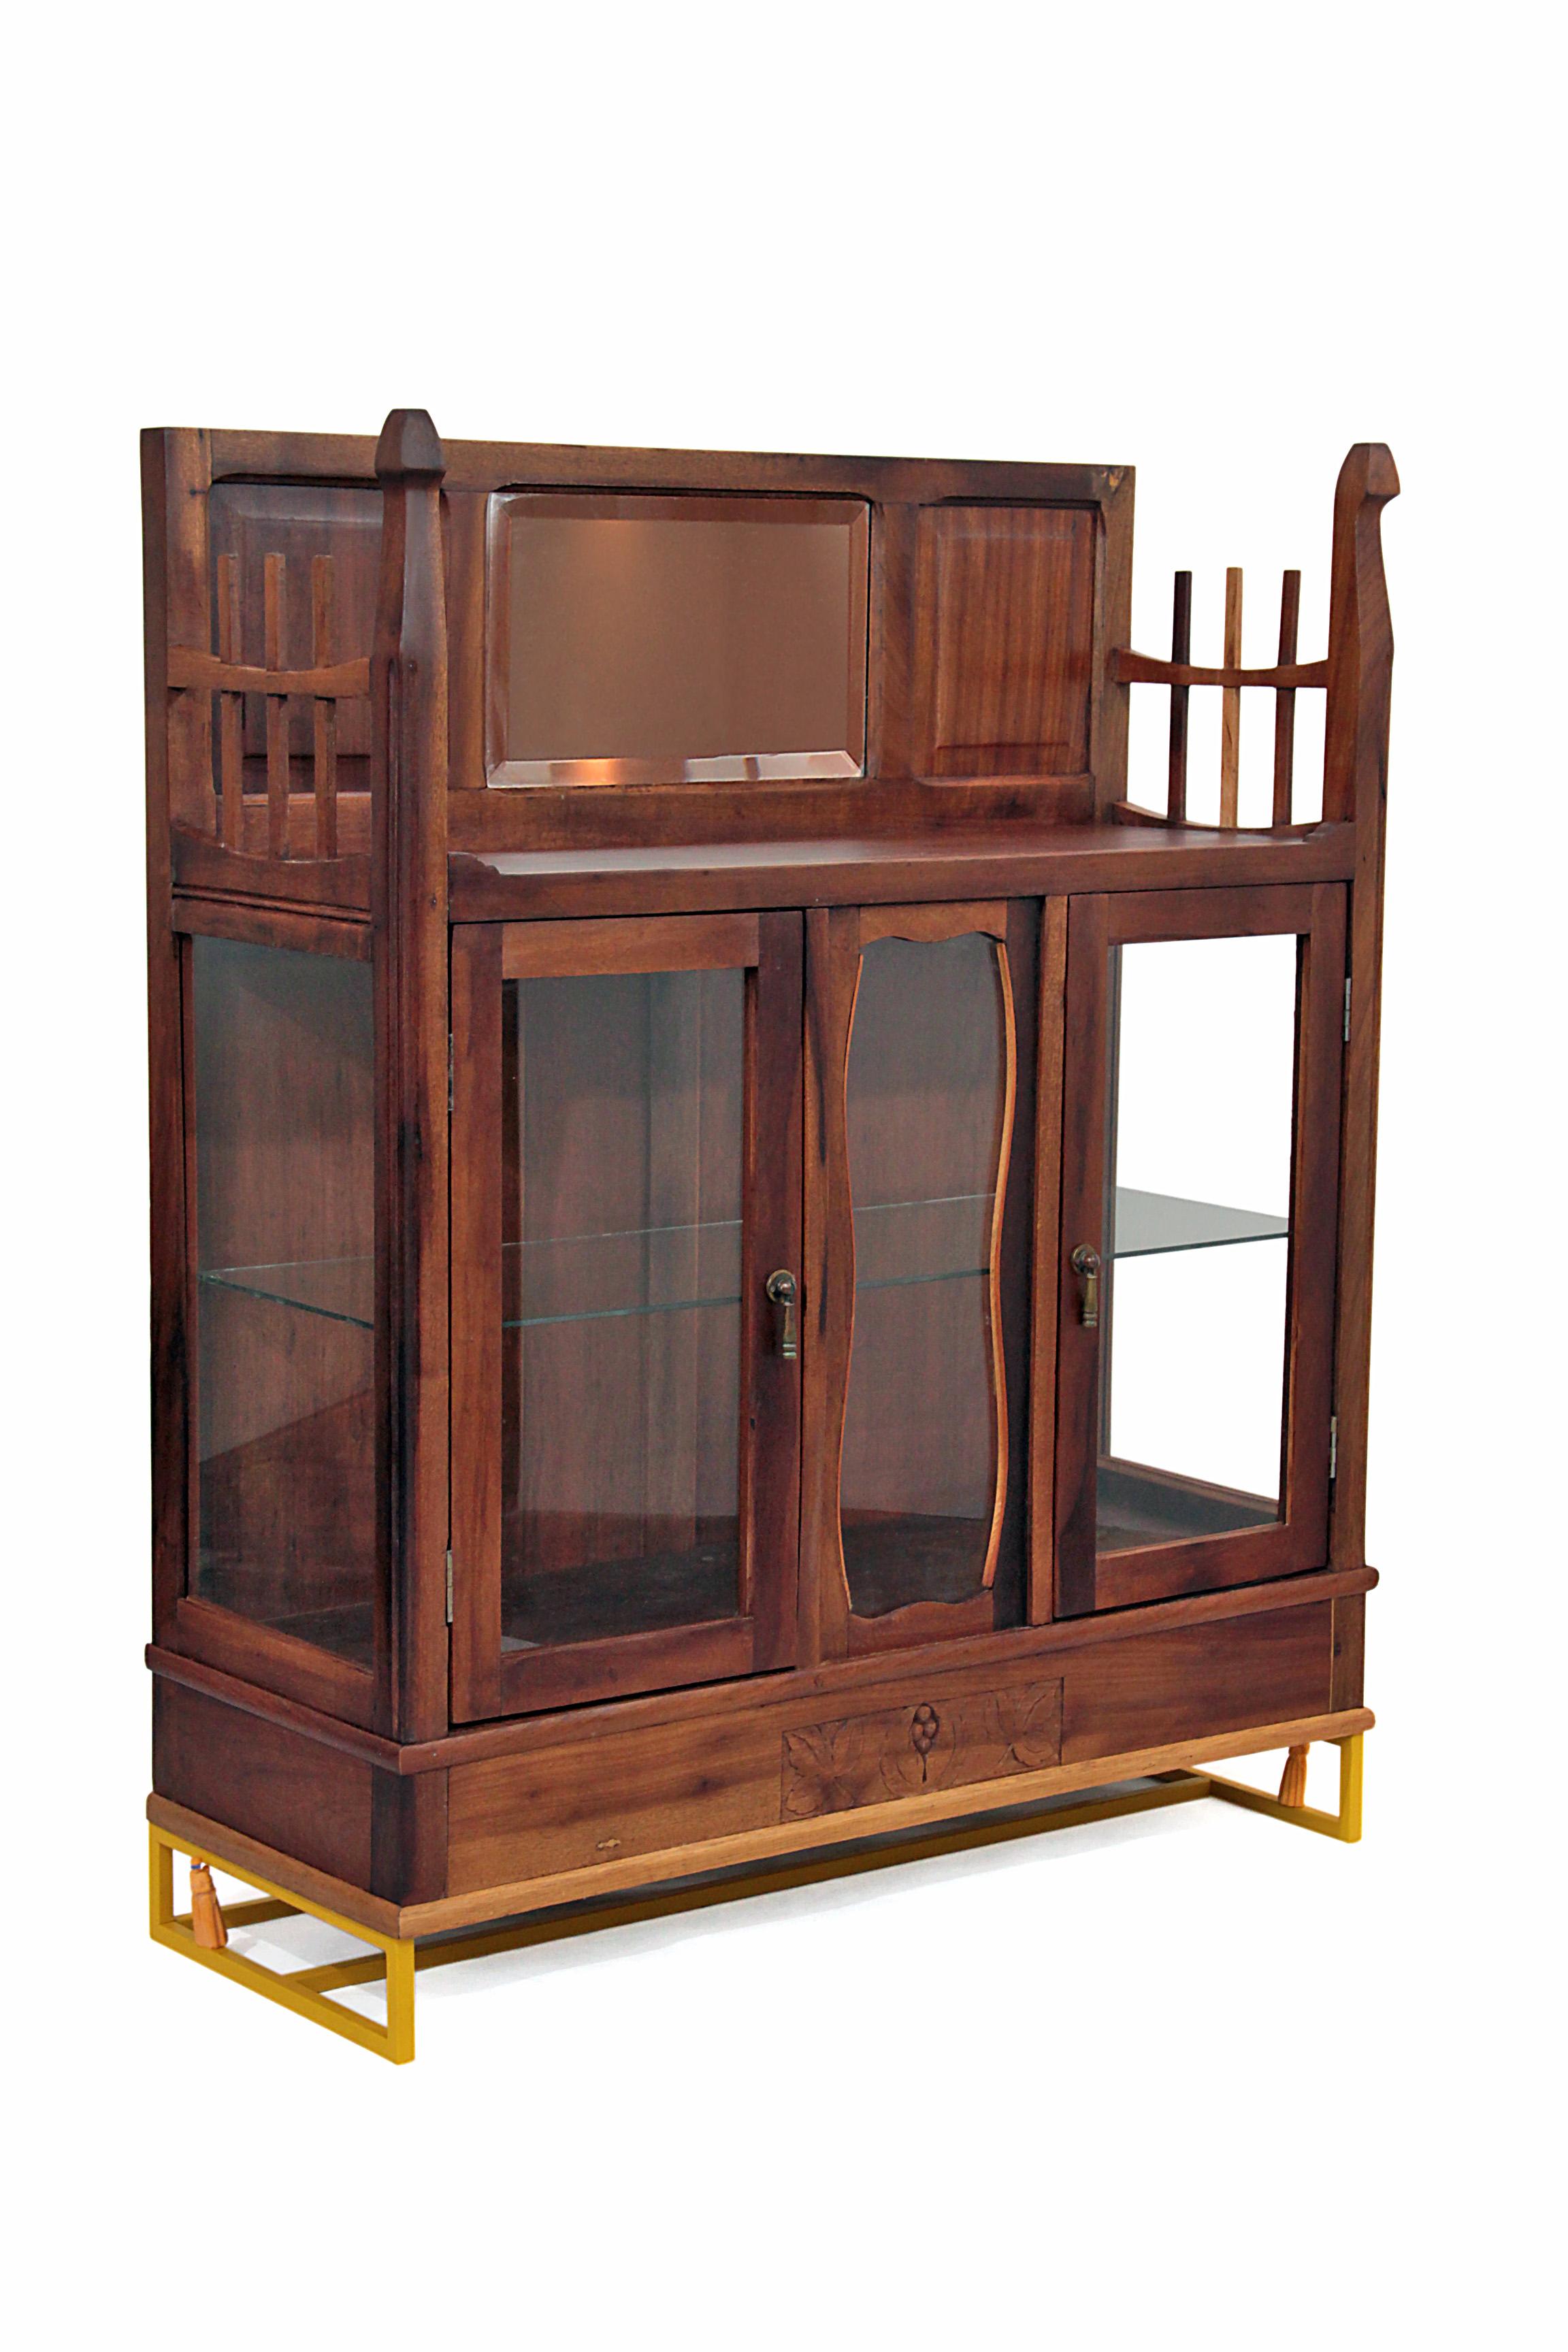 20th Century Antique Brazilian Wooden Contemporary Baroque Glass Cabinet, Restauro #1 For Sale